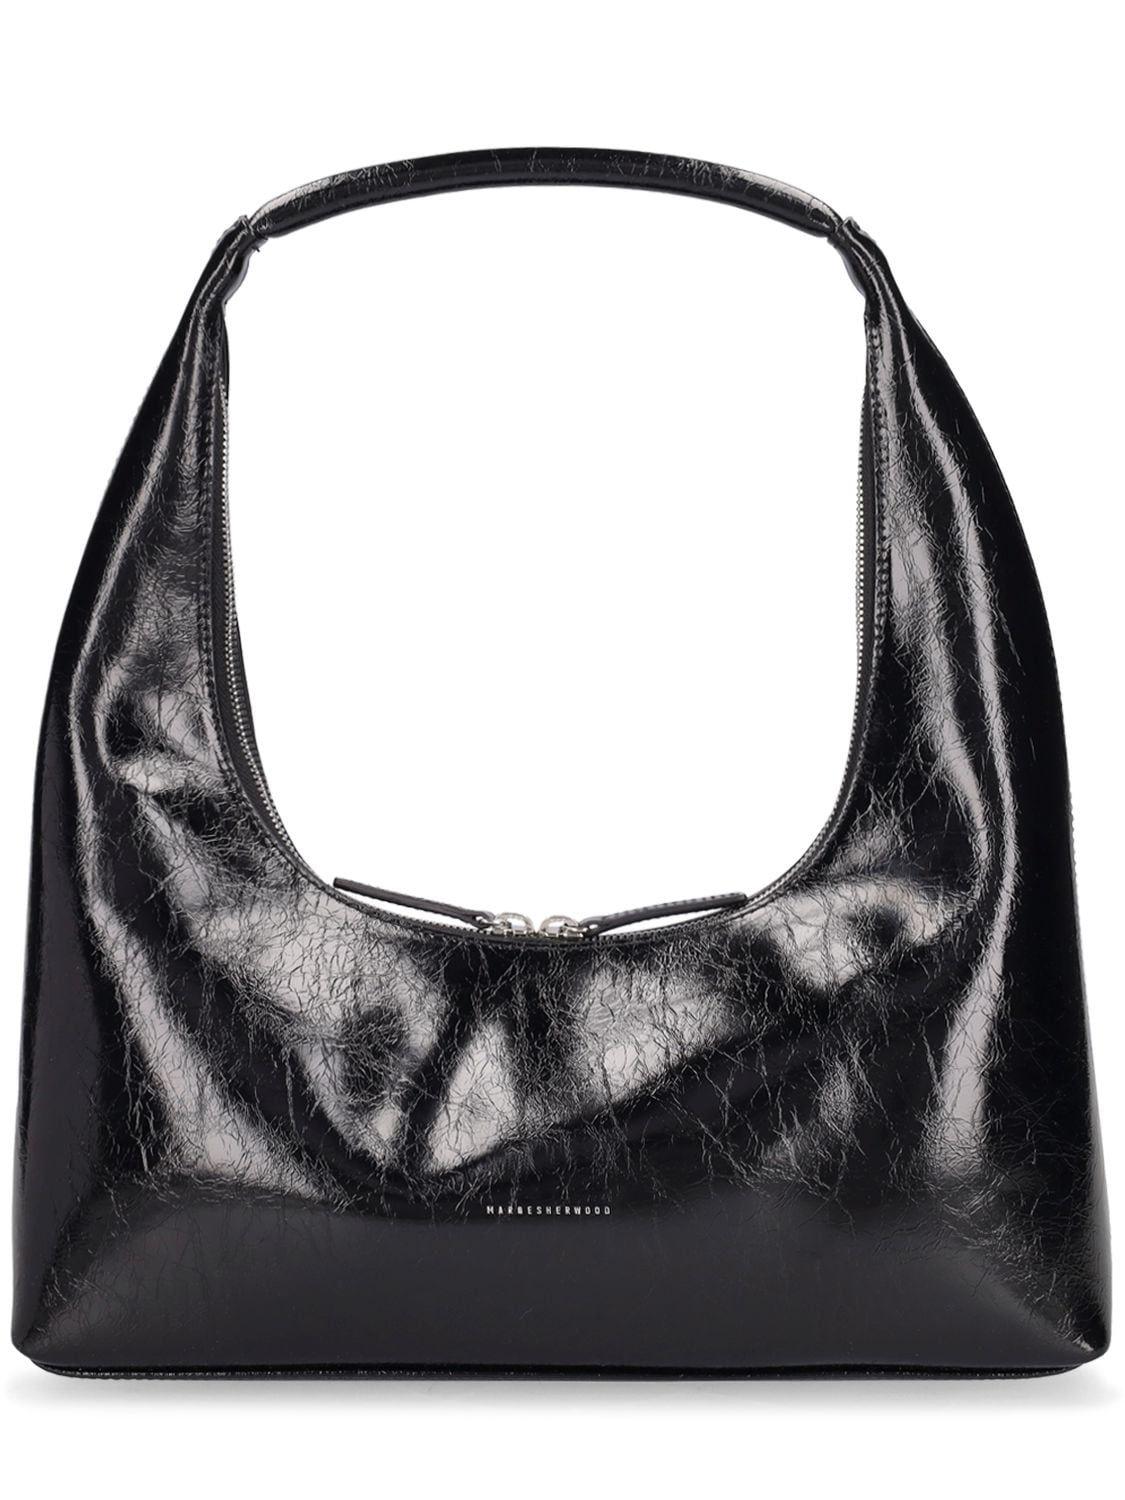 Marge Sherwood Medium Hobo Crinkle Leather Shoulder Bag in Black